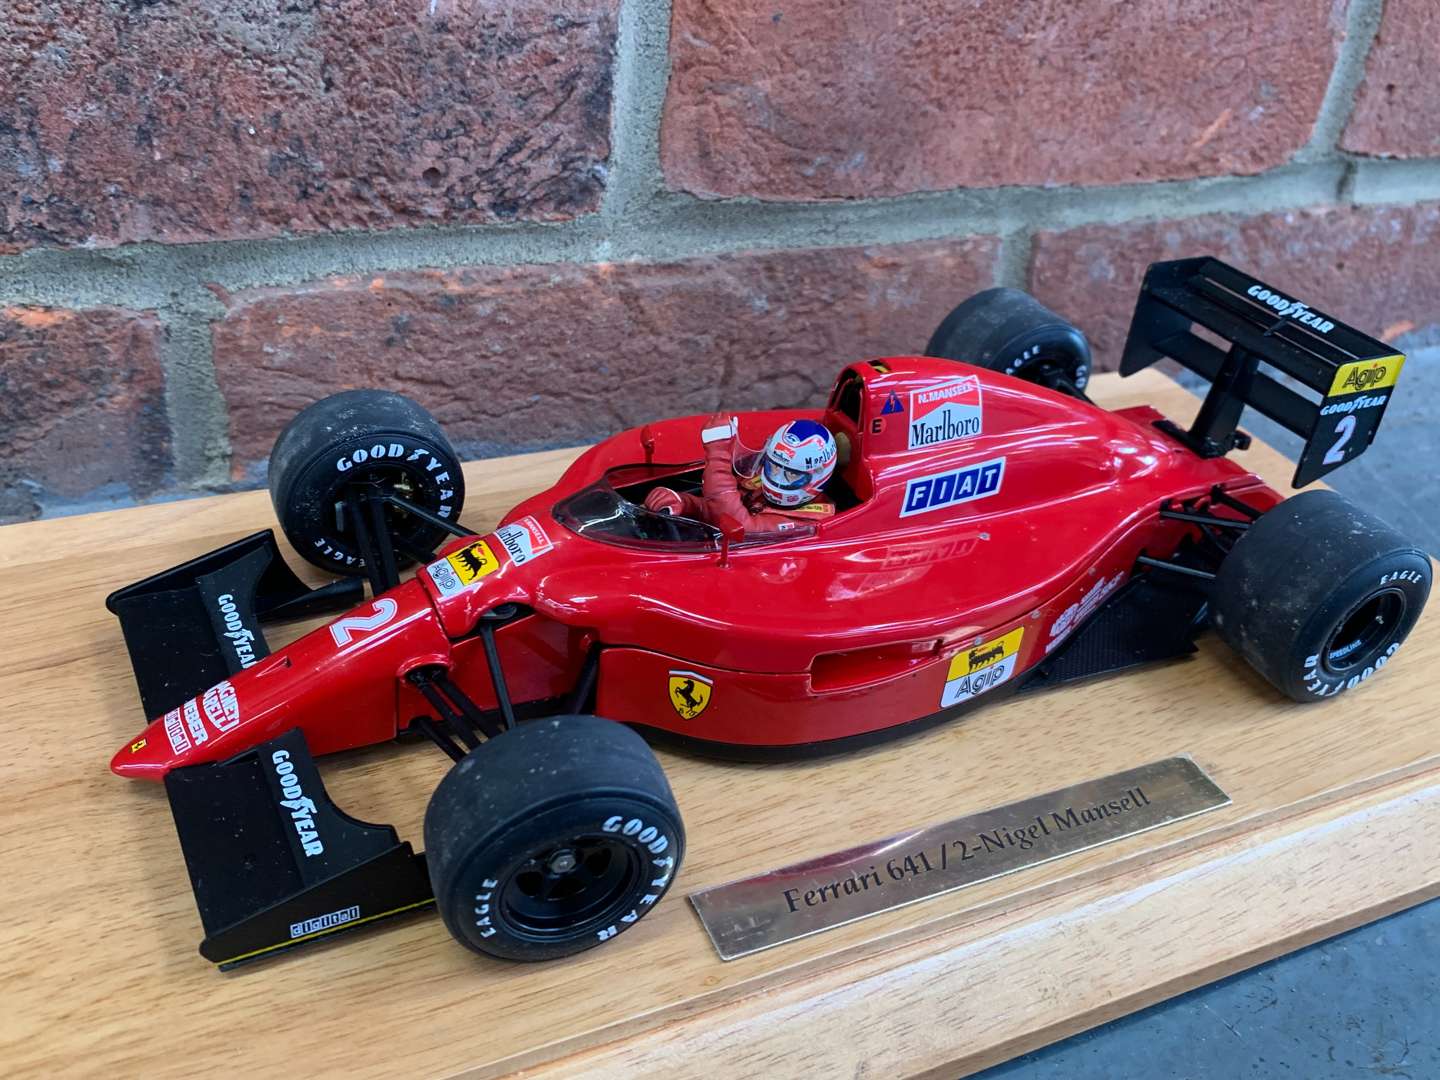 <p>Ferrari 641/2 Nigel Mansell F1 Model Car</p>